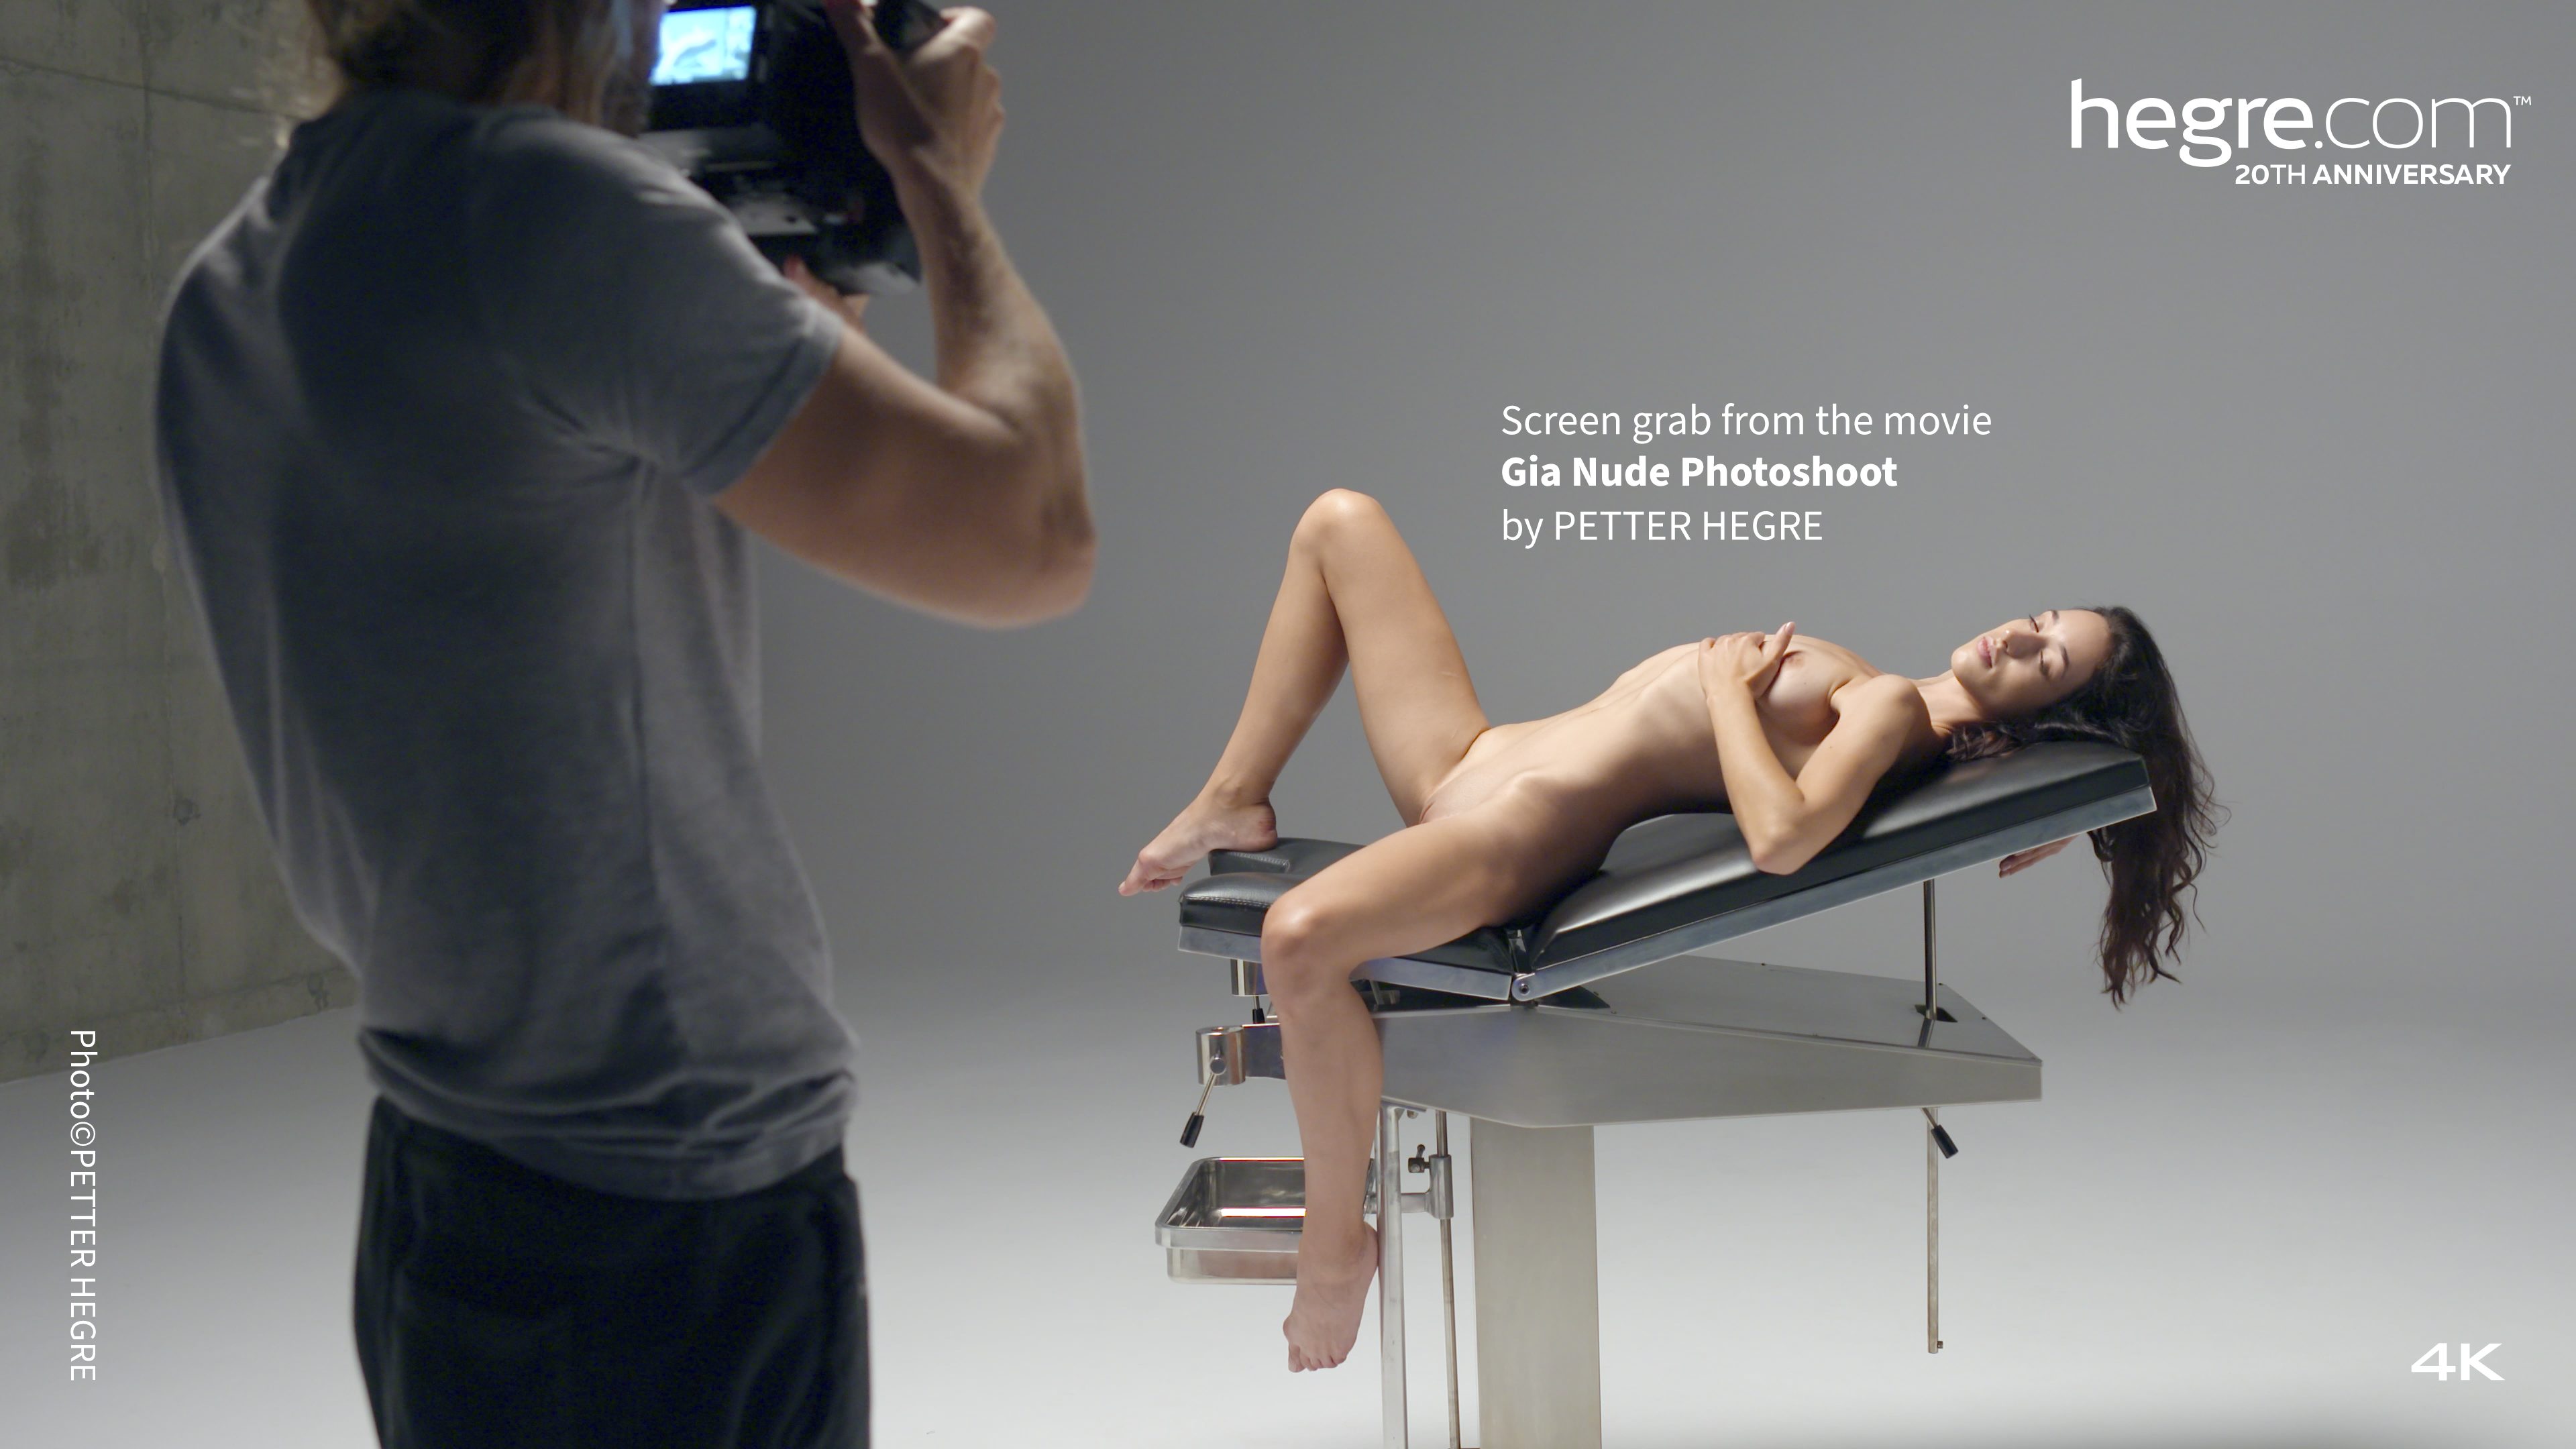 gia nude photoshoot poster 12